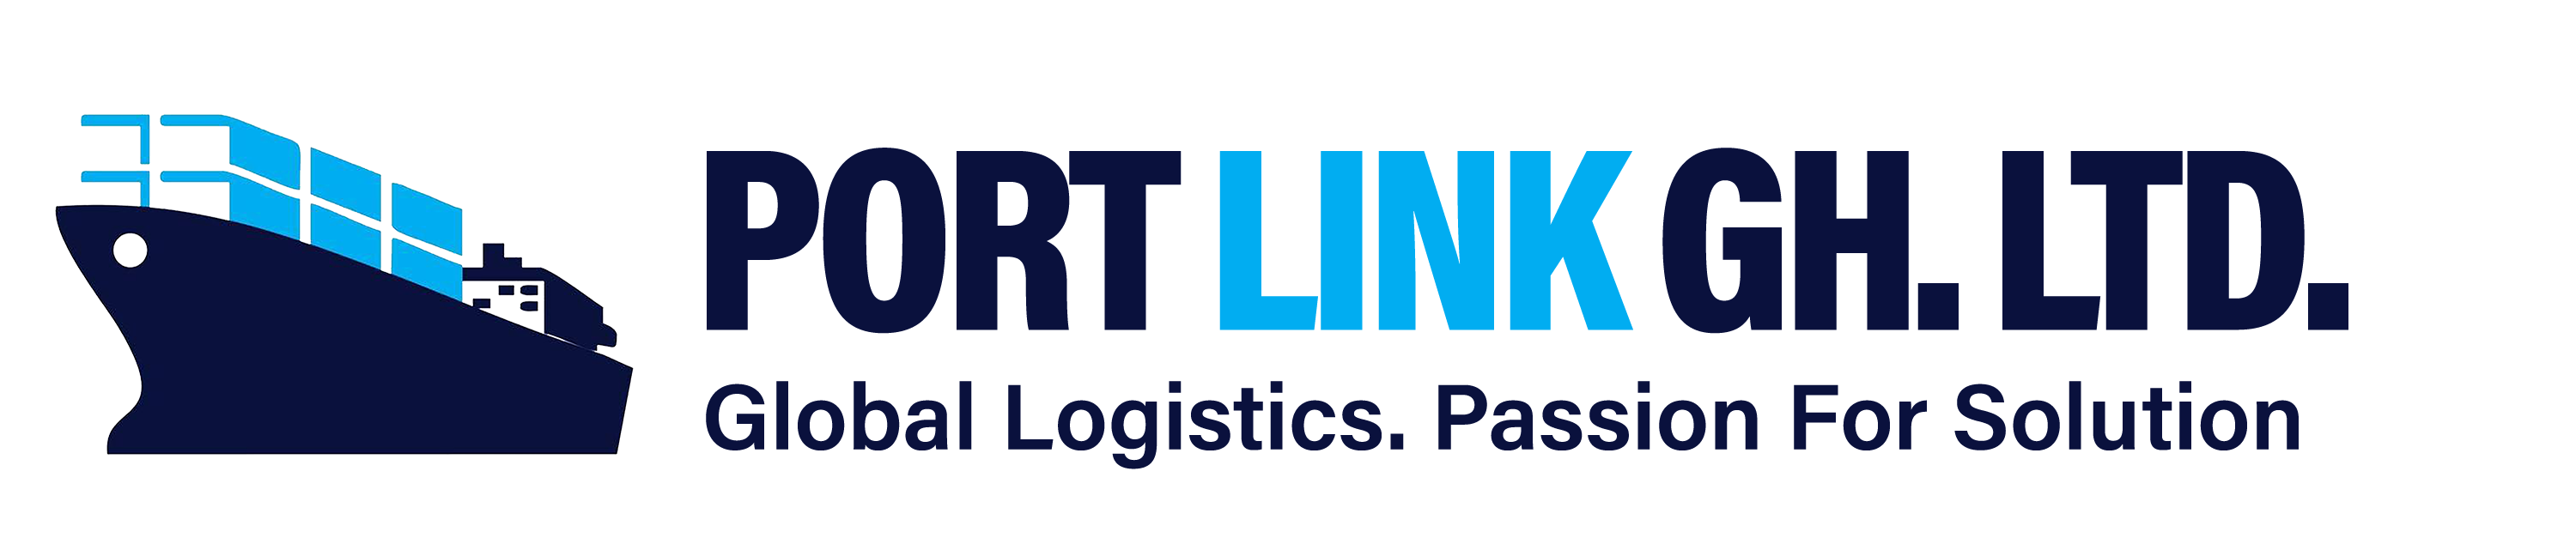 PortLink Ghana Limited – Official Website